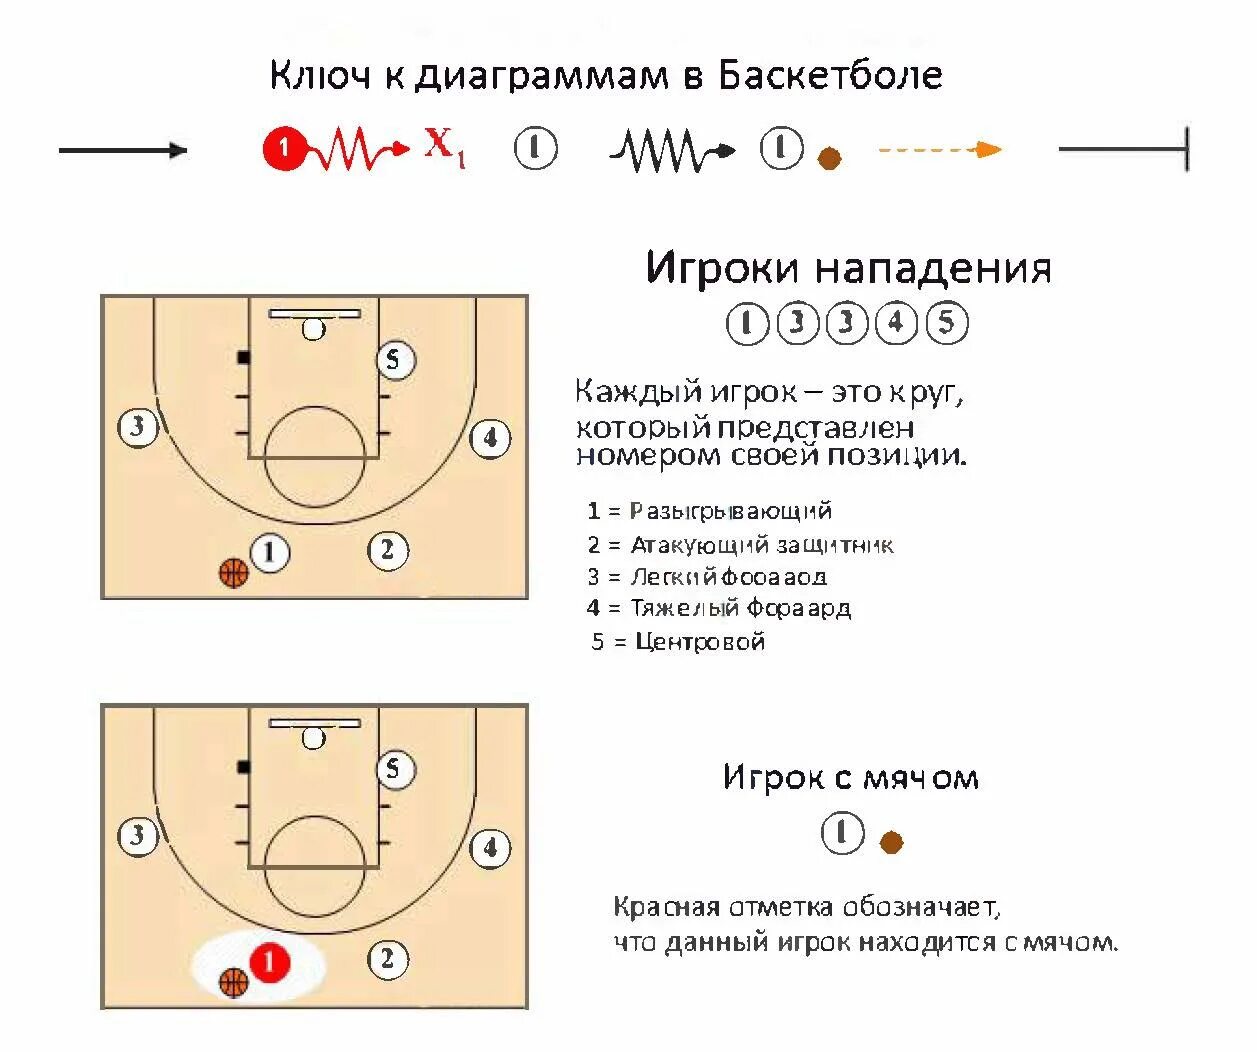 Позиция б. Расстановка игроков в баскетболе схема. Баскетбол расстановка игроков на площадке. Позиции амплуа игроков в баскетболе. Расположение игроков в баскетболе.